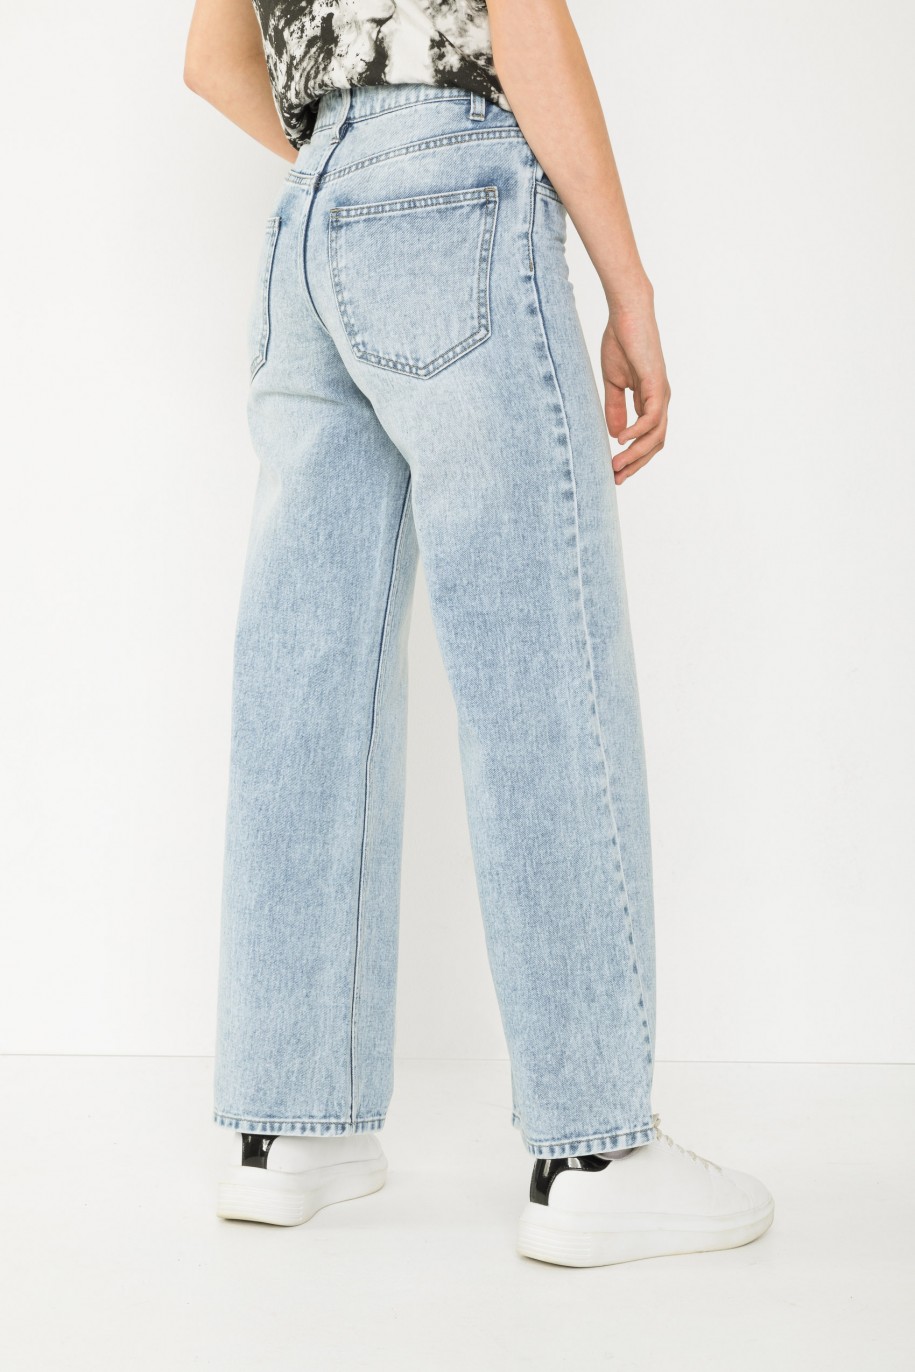 Niebieskie jeansowe spodnie typu WIDE LEG - 43784